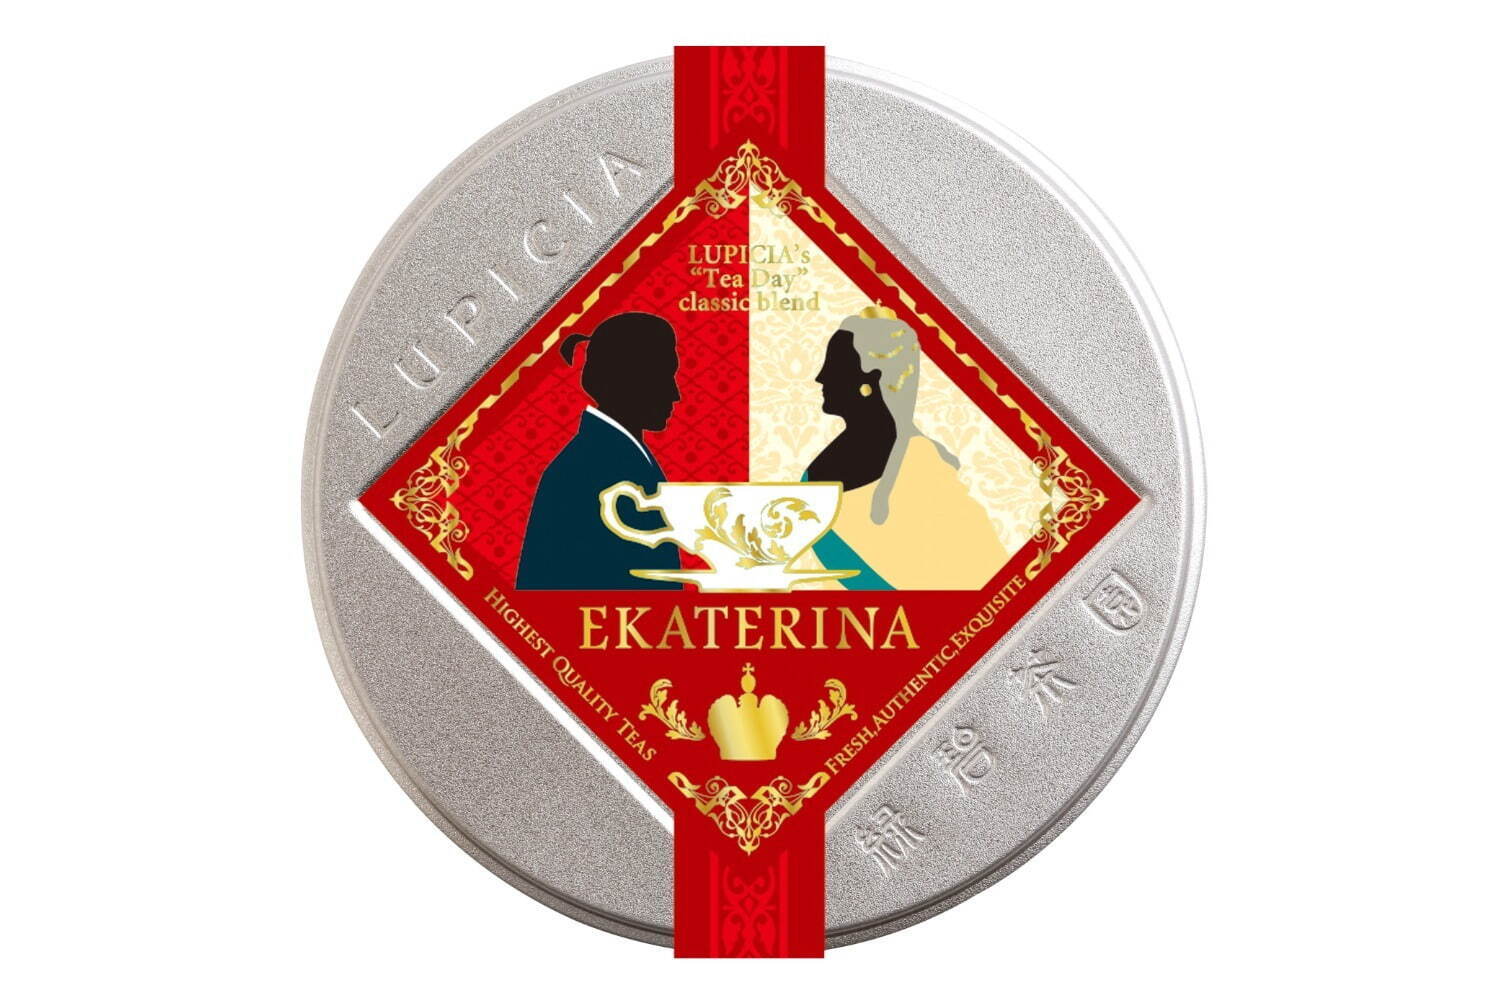 「エカテリーナ」〈期間・数量限定〉
ティーバッグ10個デザイン缶入 1,500円